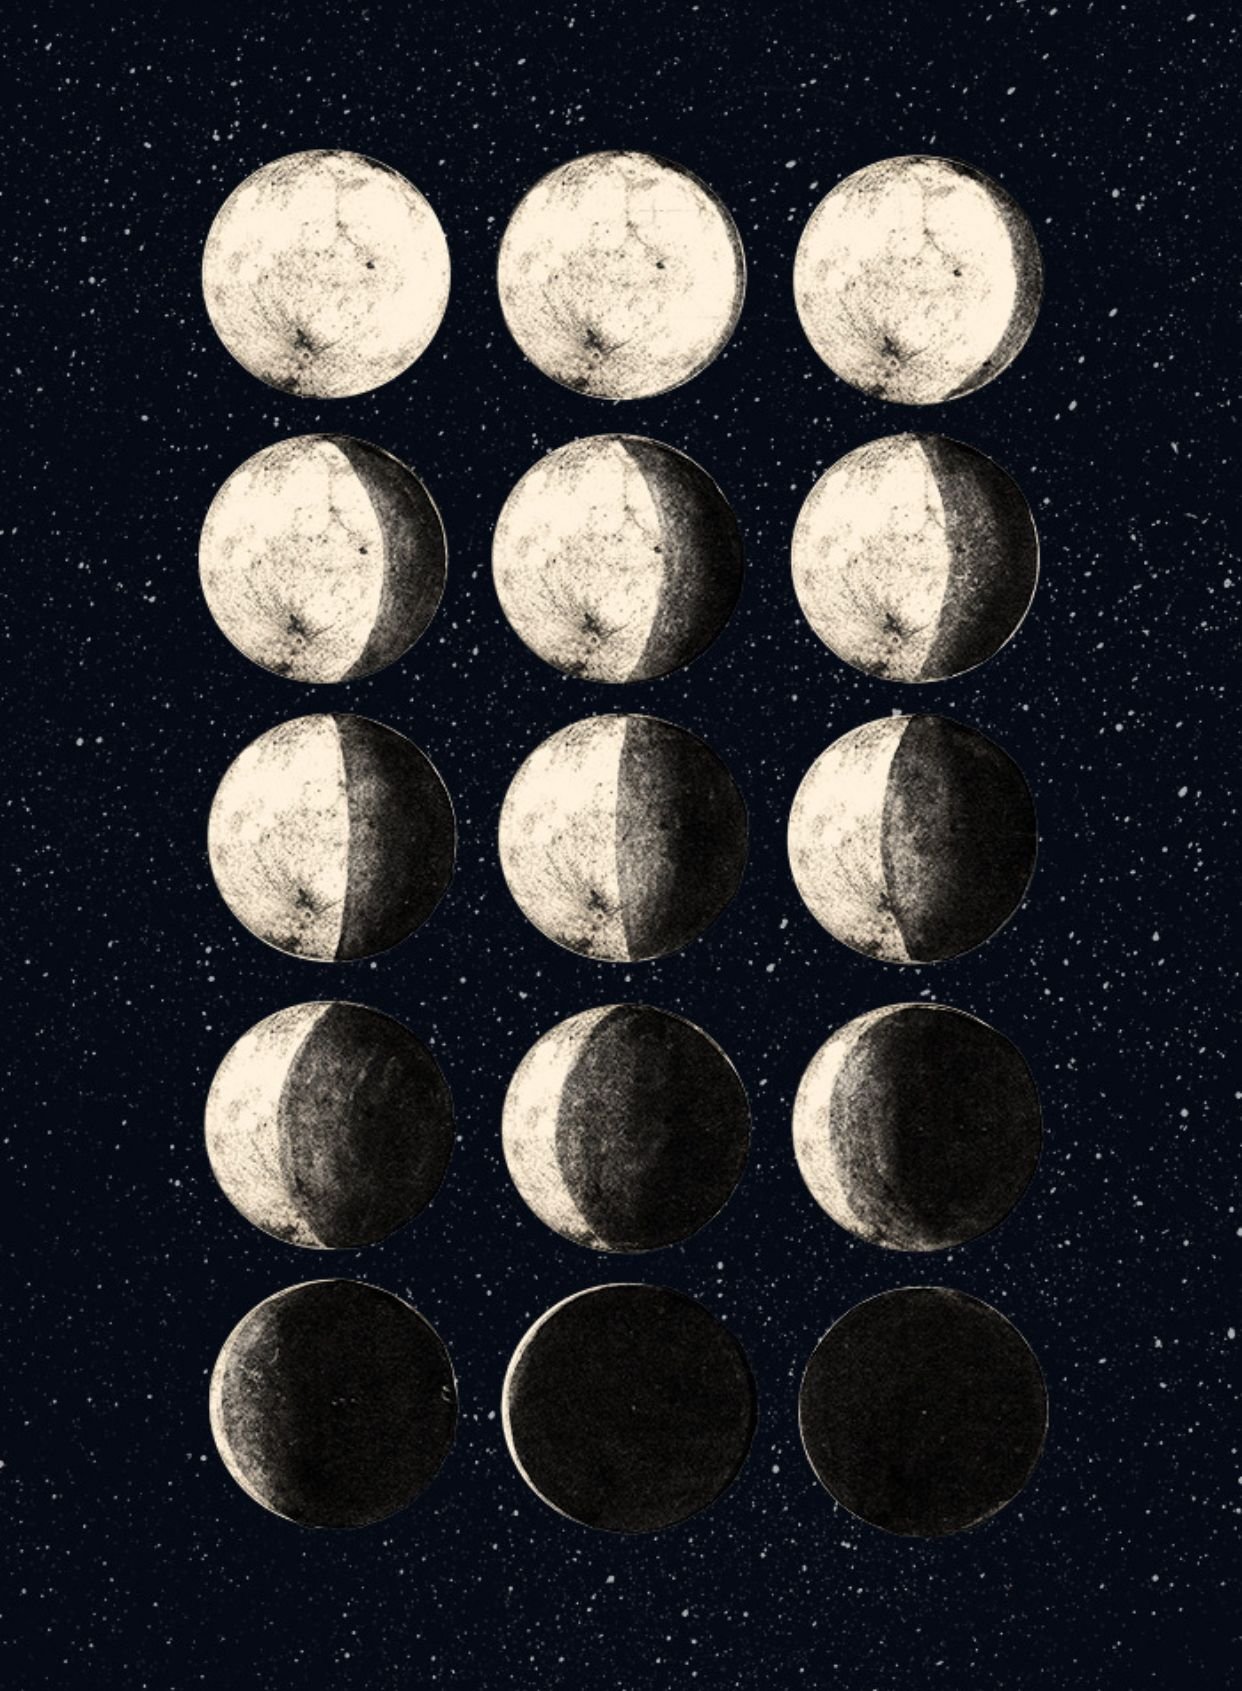 Луна в разные годы. Фазы Луны. Цикл Луны арт. Ф̆̈ӑ̈з̆̈ы̆̈ Л̆̈ў̈н̆̈ы̆̈. Луна в разных фазах.